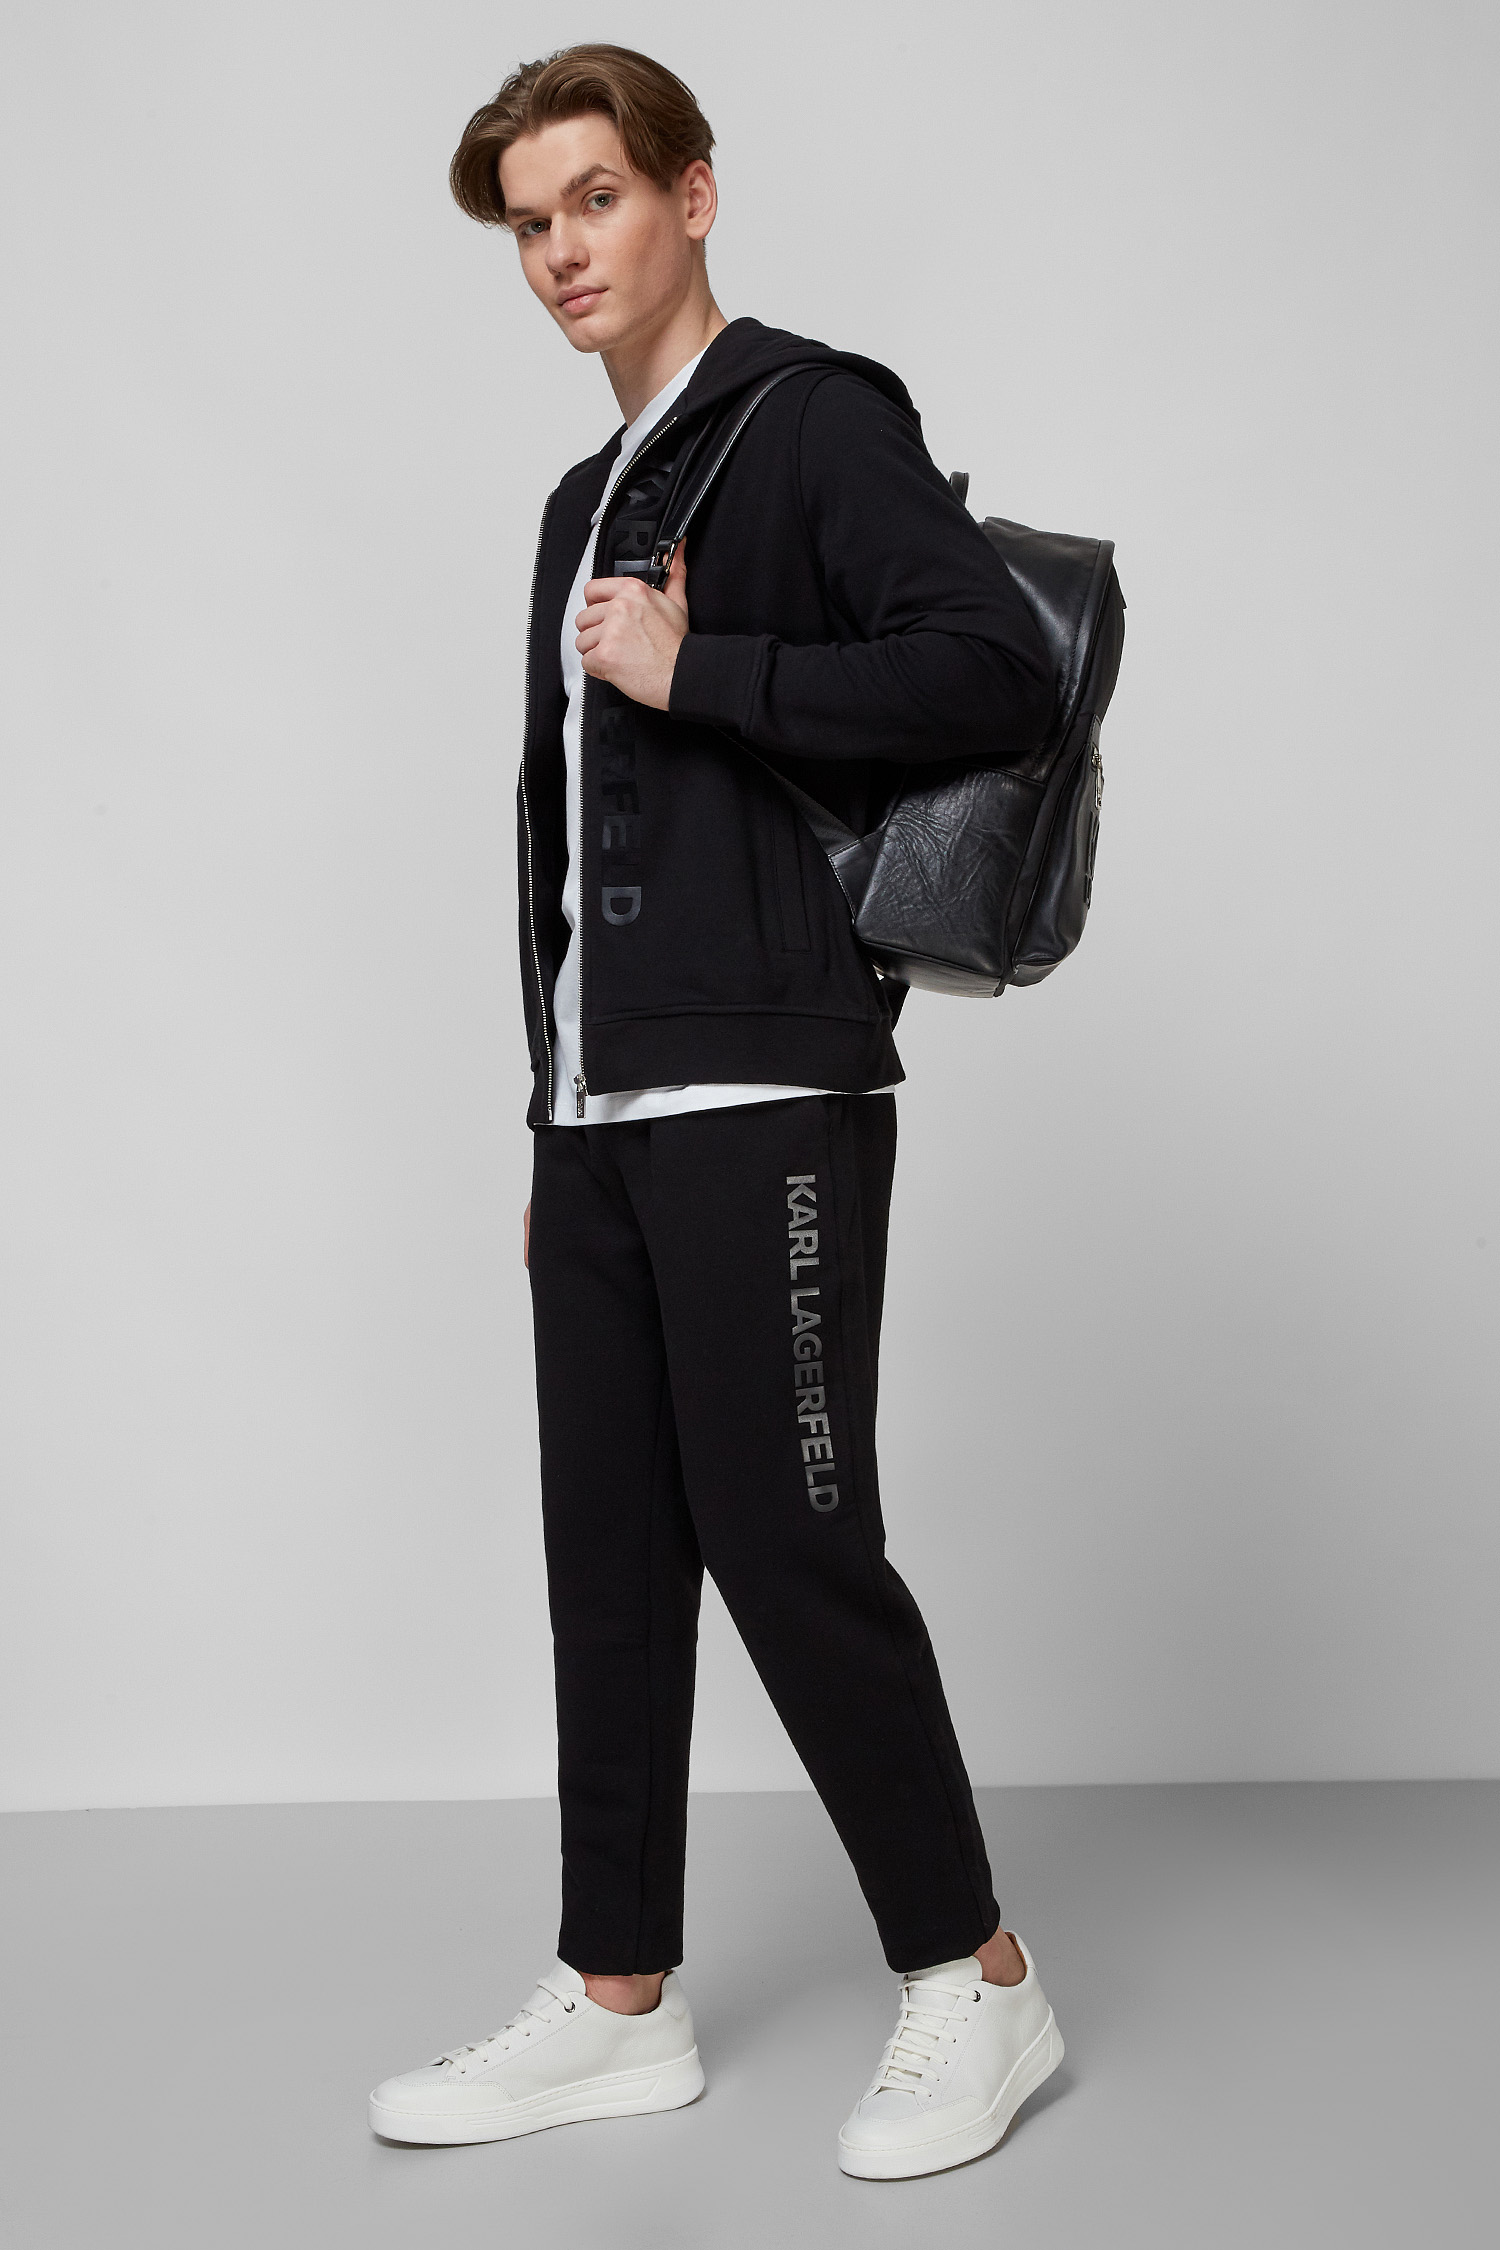 Чорні спортивні штани для хлопців Karl Lagerfeld 512910.705042;990